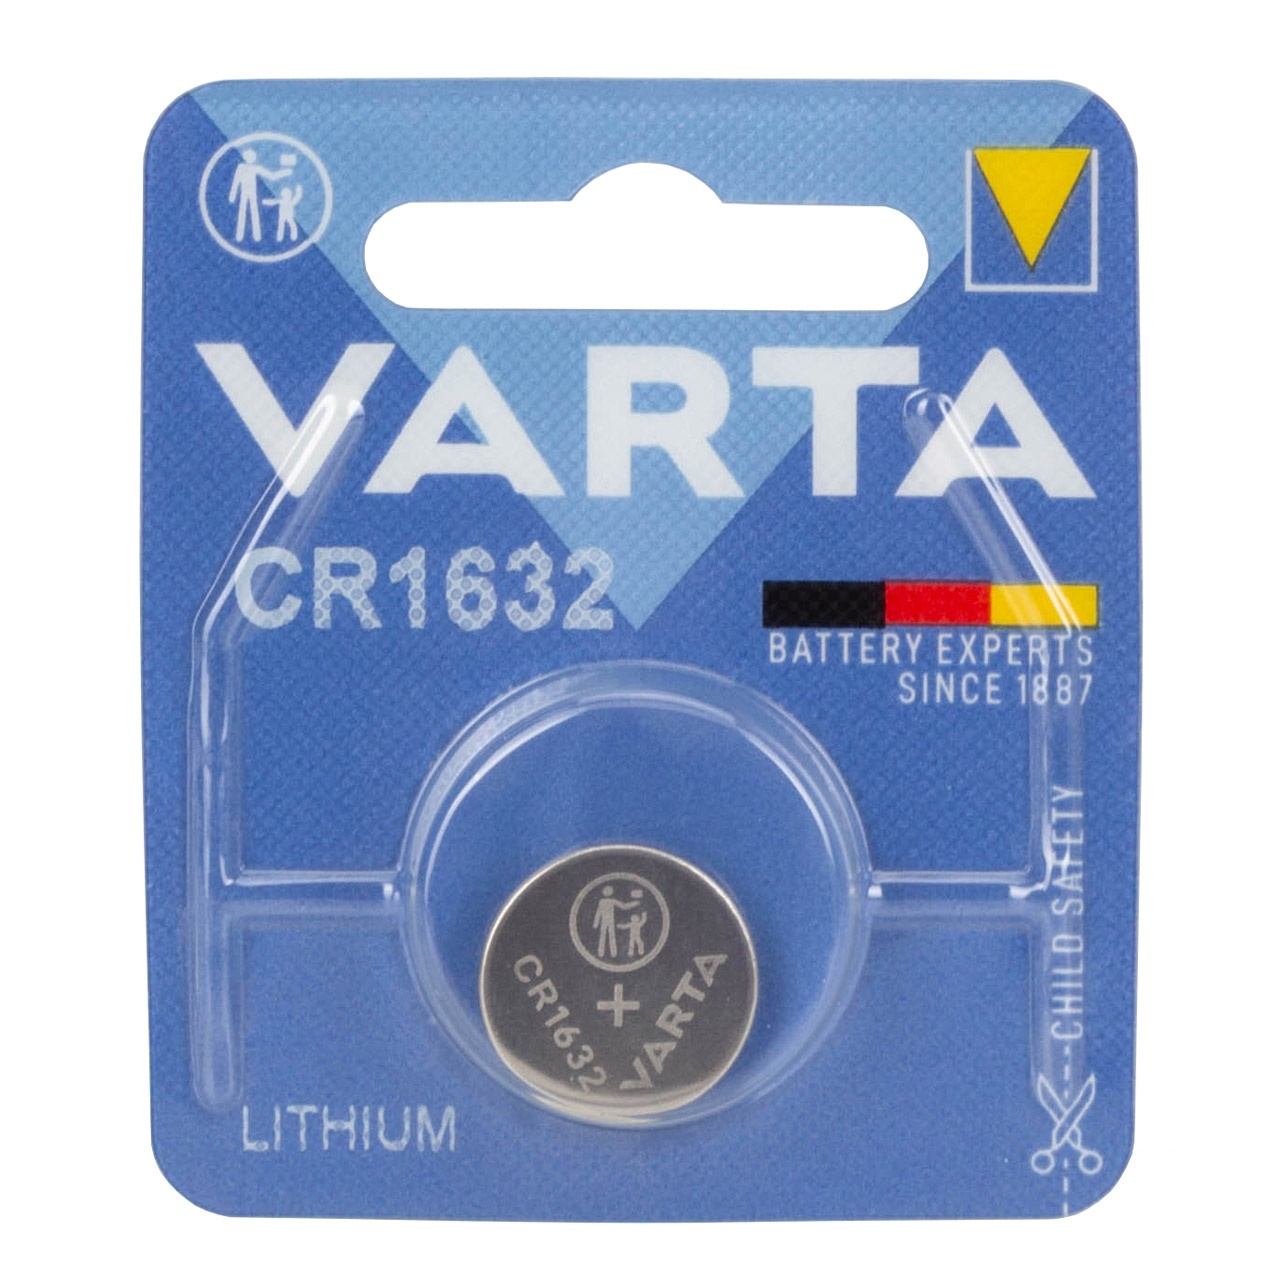 10x VARTA Lithium 3V CR1632 Knopfzelle Knopfbatterie Batterie (MHD 04.2033)